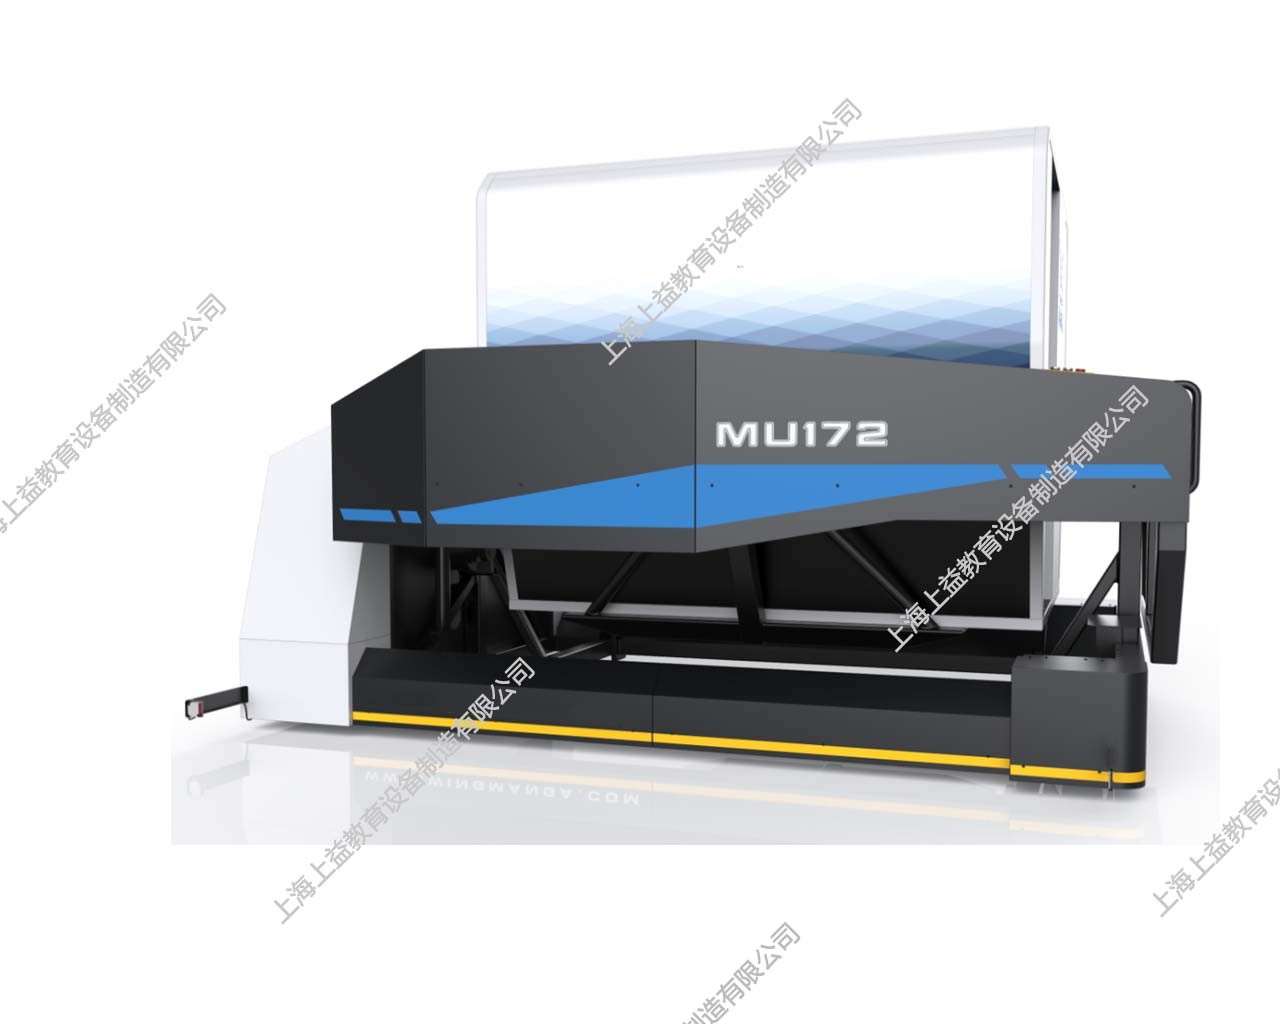 MU172白鹭系列全动模拟器